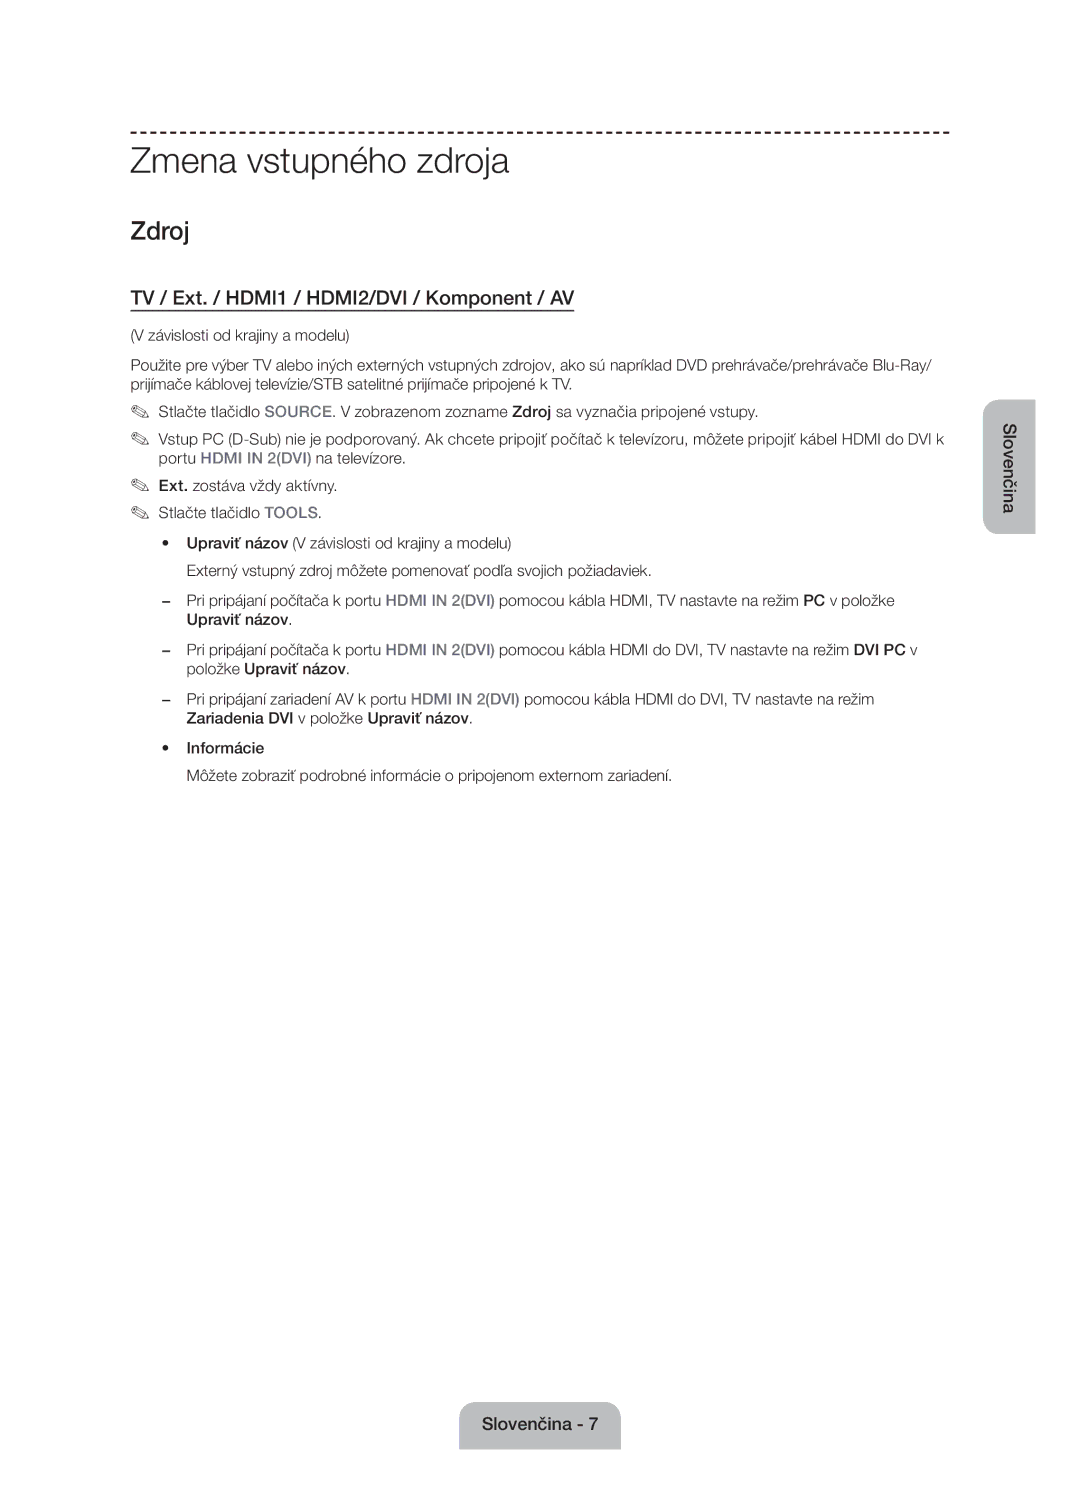 Samsung UE50J6100AWXXN, UE55J6100AWXZF manual Zmena vstupného zdroja, TV / Ext. / HDMI1 / HDMI2/DVI / Komponent / AV 